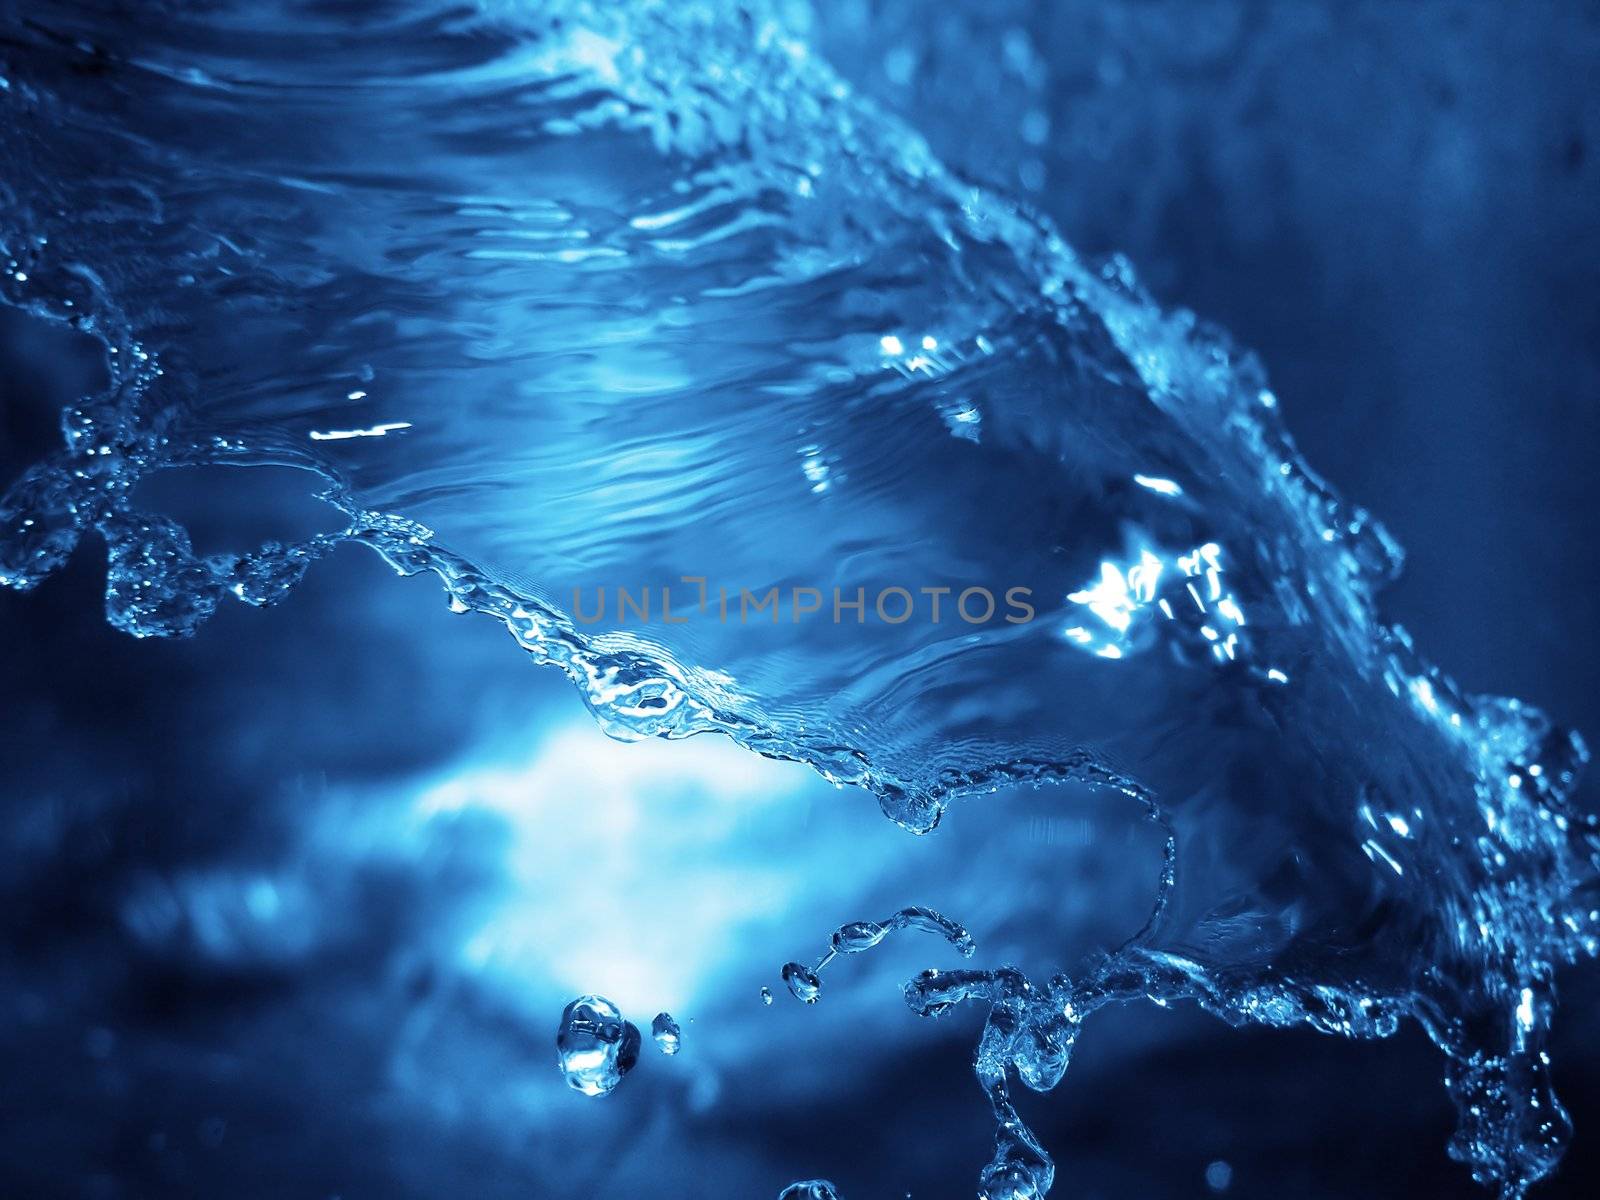 Water splash by kjpargeter